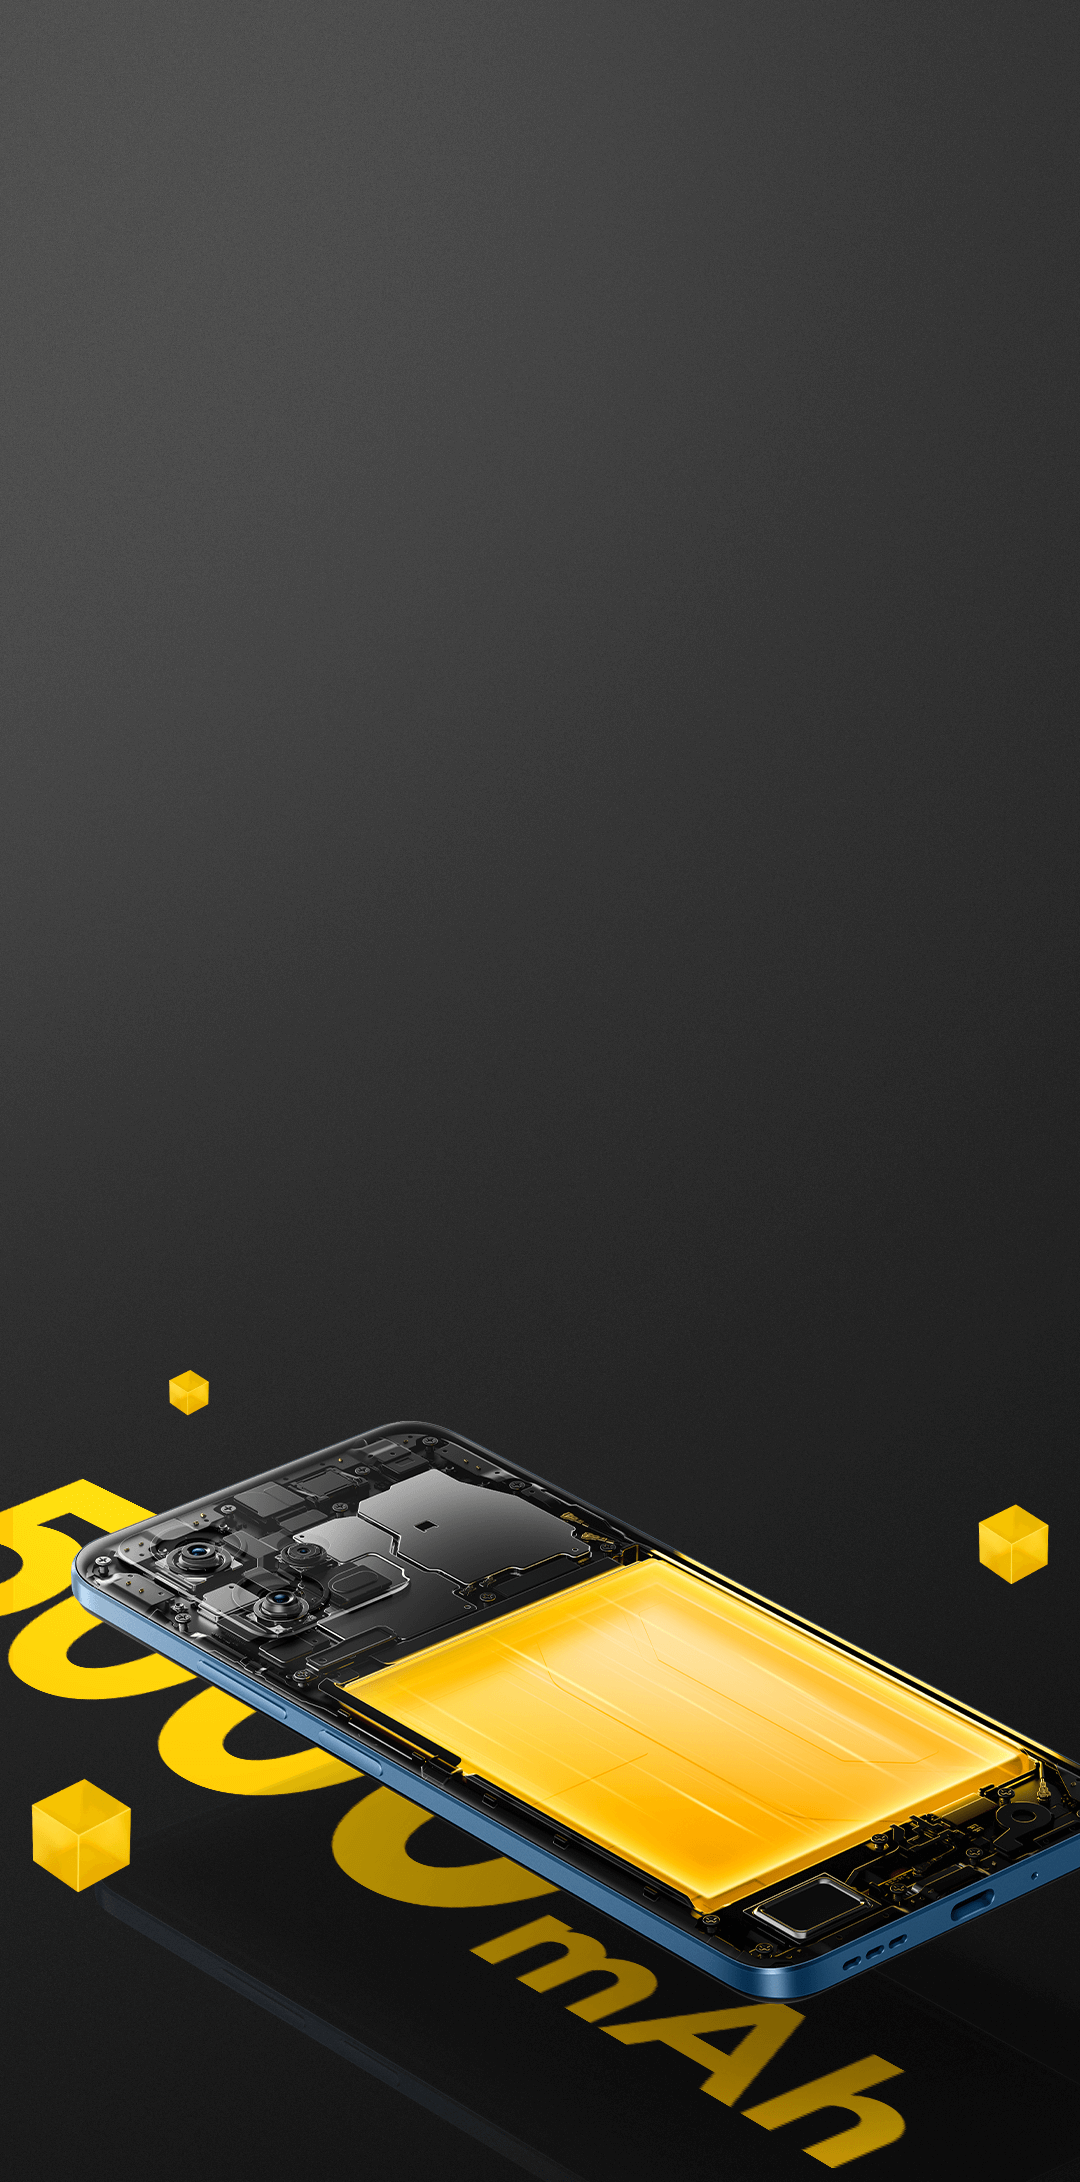 POCO X5 5G  Xiaomi España